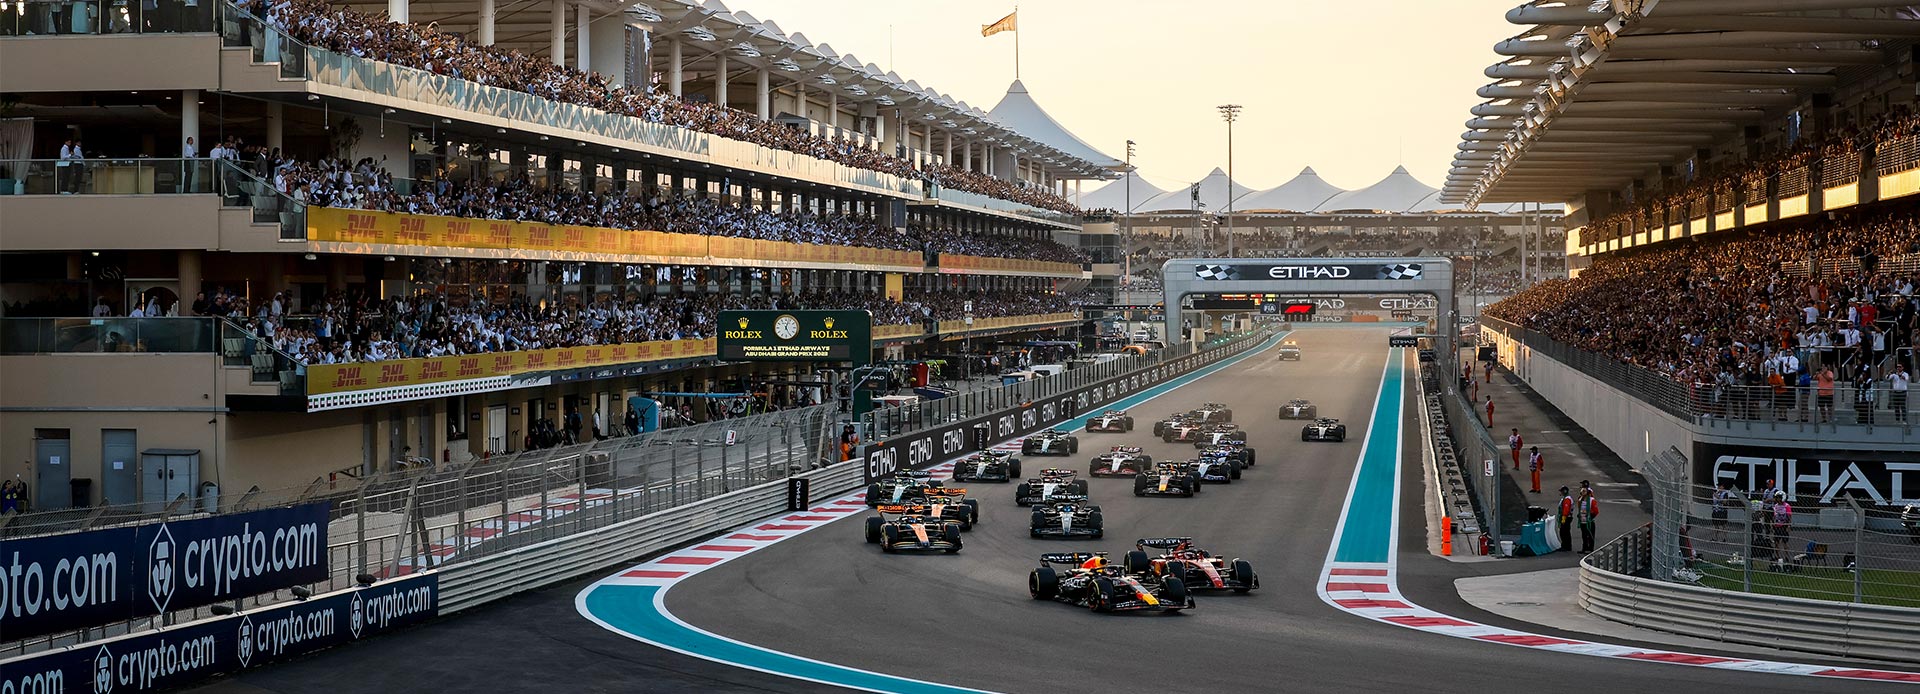 منظر لسيارات تقترب من الطريق المستقيم خلال سباق الجائزة الكبرى F1 أبو ظبي.